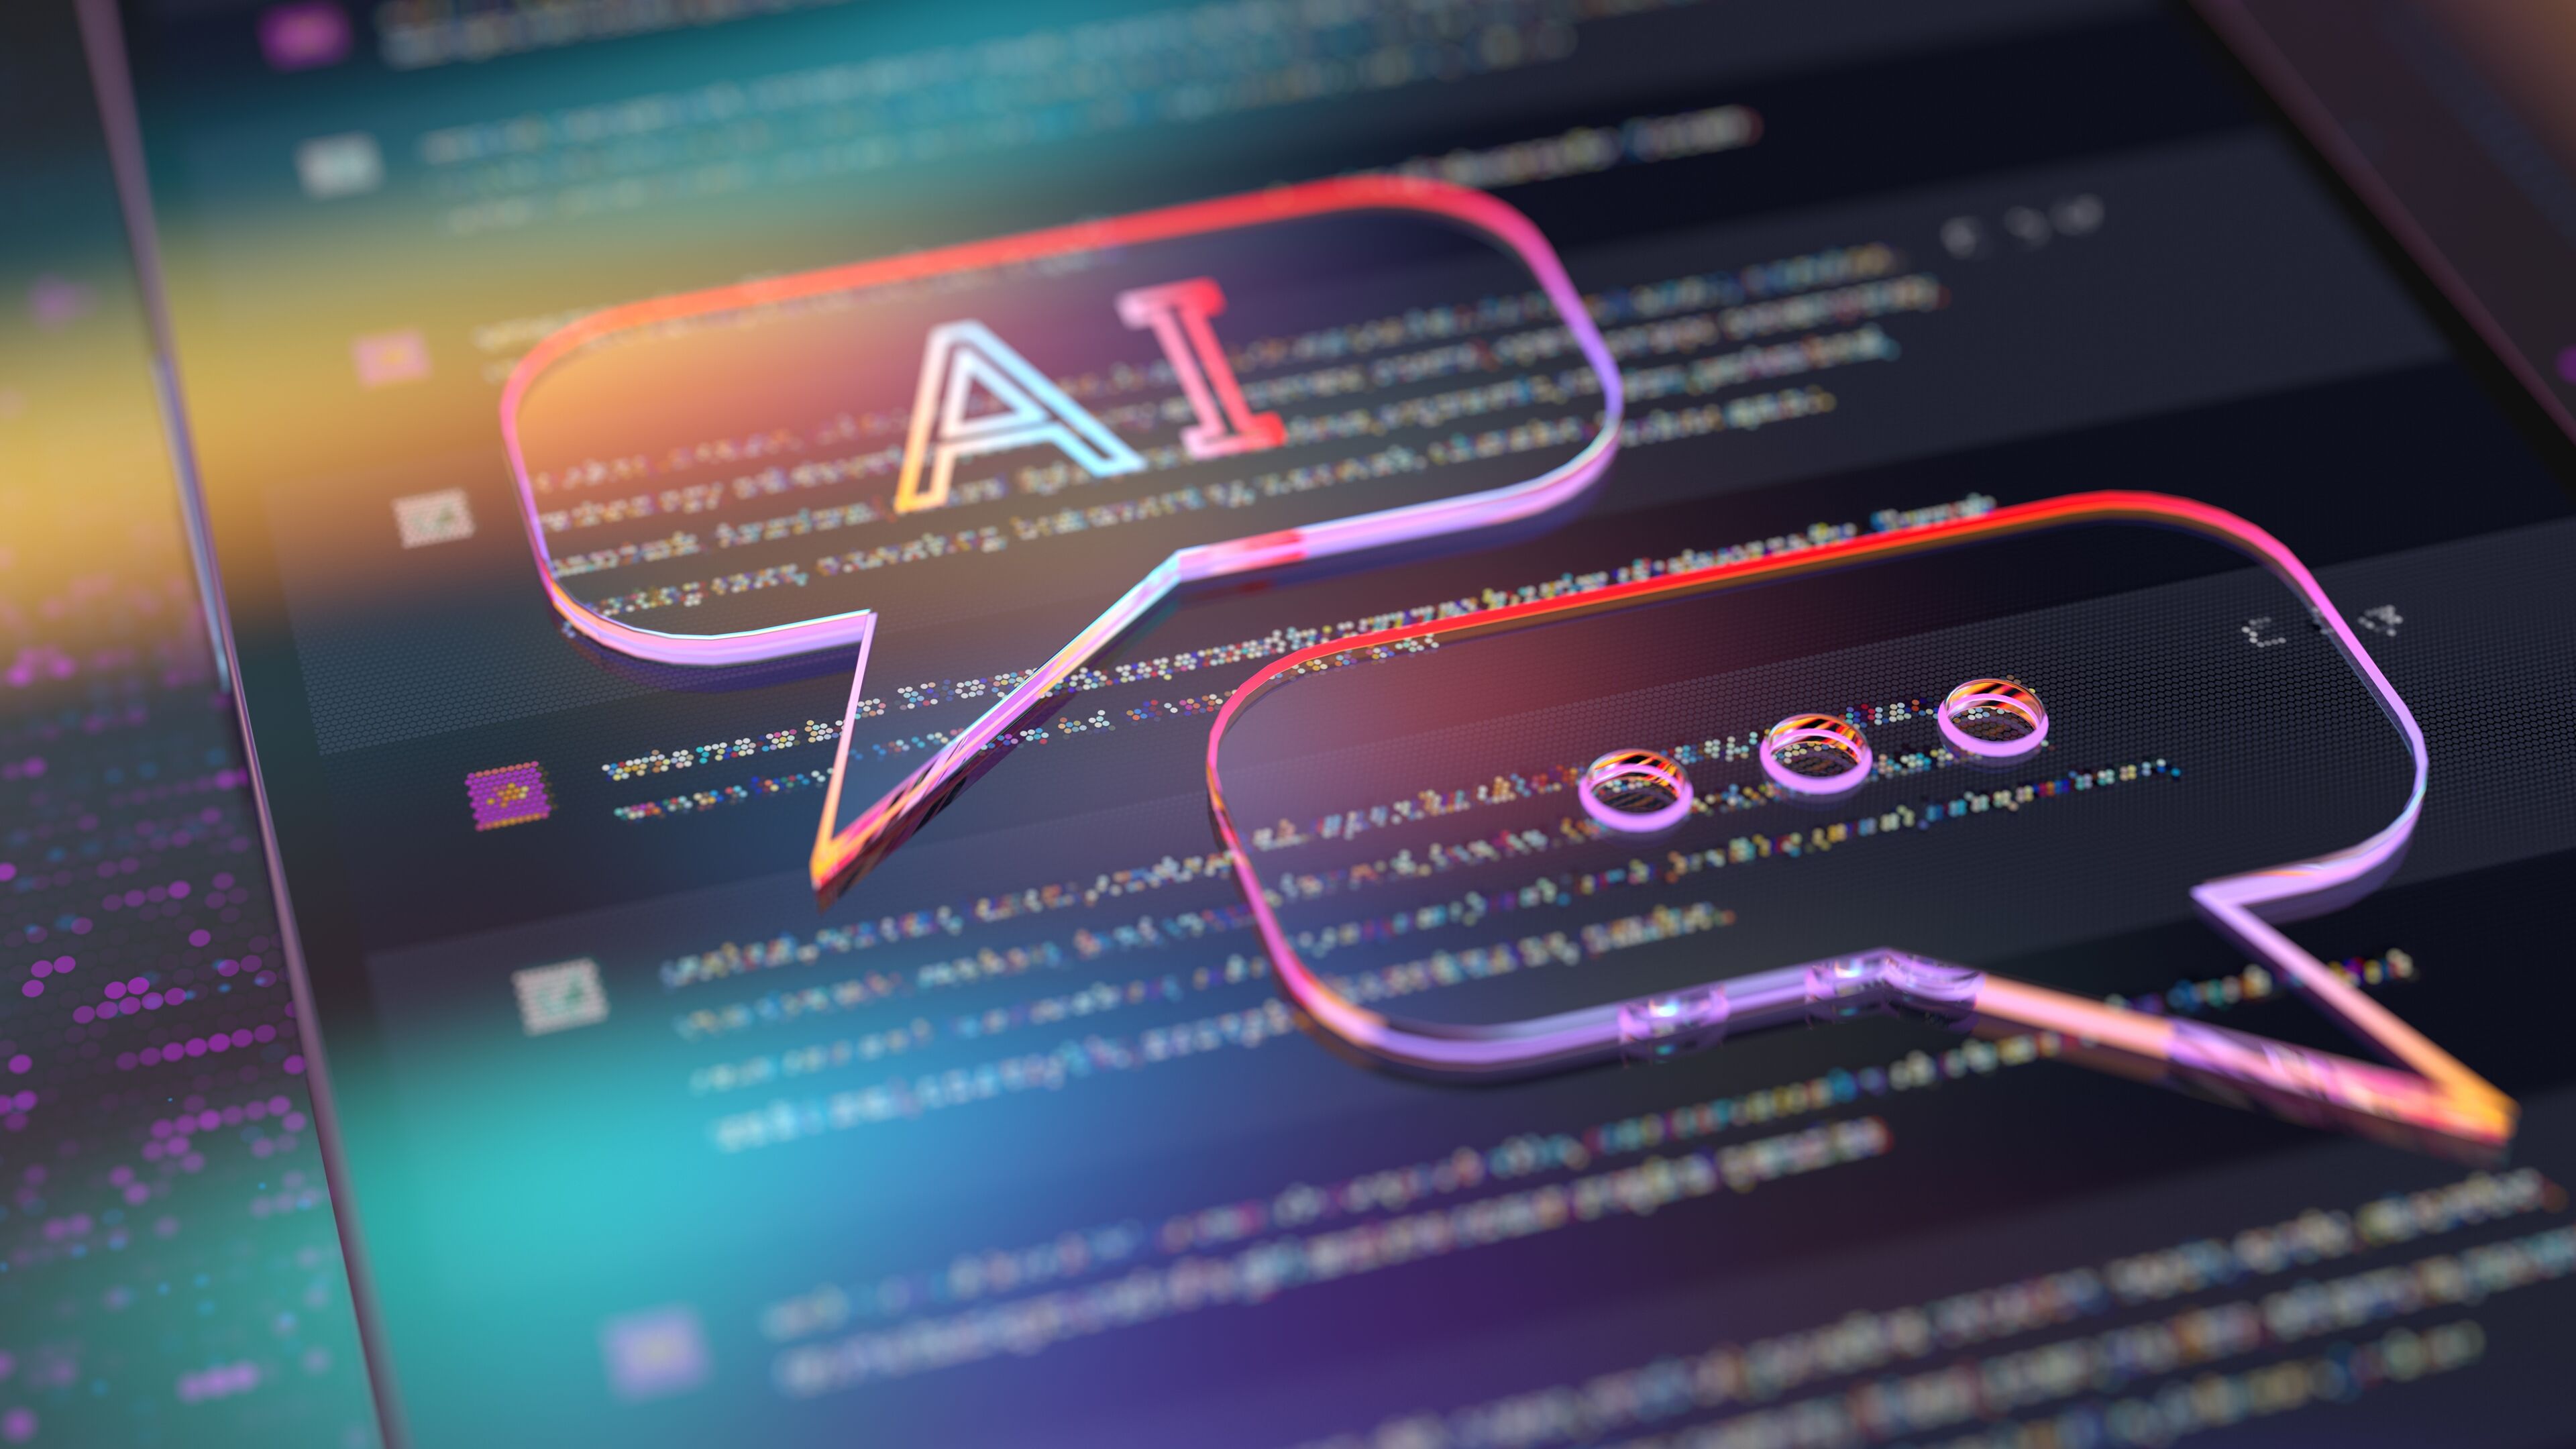 Bulles de dialogue éclairées au néon avec texte "IA" superposées sur un écran sombre rempli de code de programmation, symbolisant l'intersection de la conversation et de la technologie.